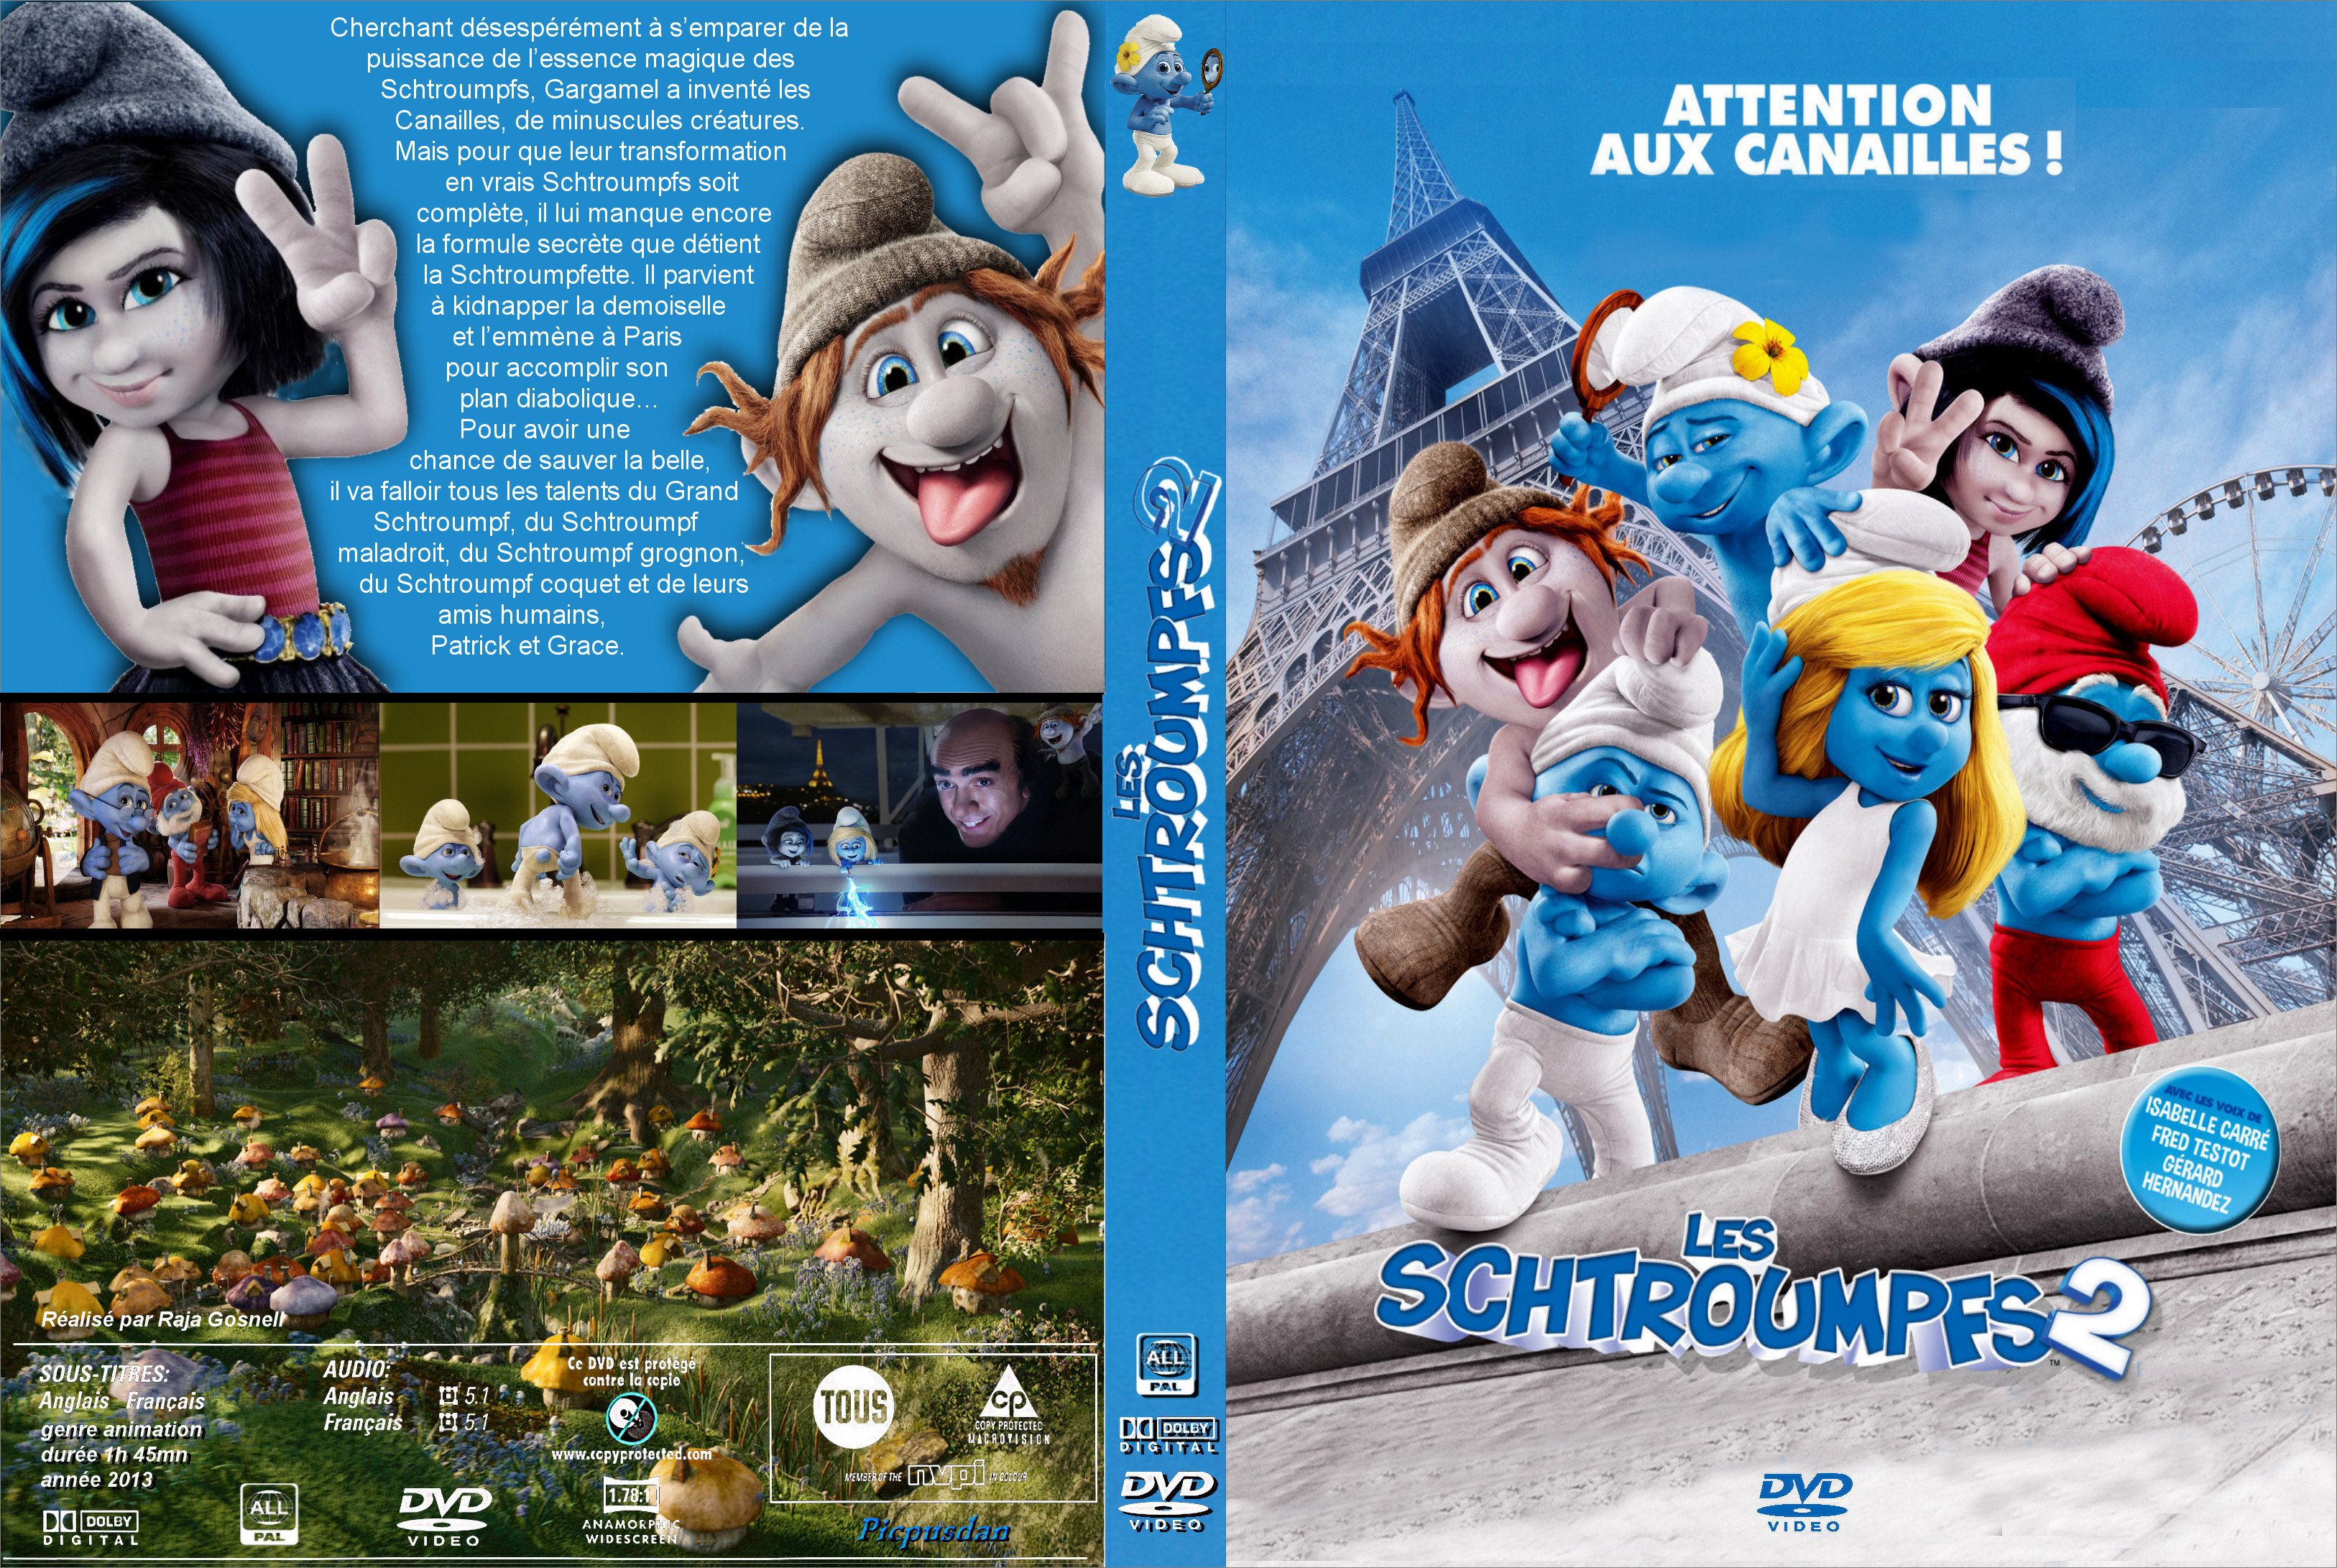 Jaquette DVD Les Schtroumpfs 2 custom